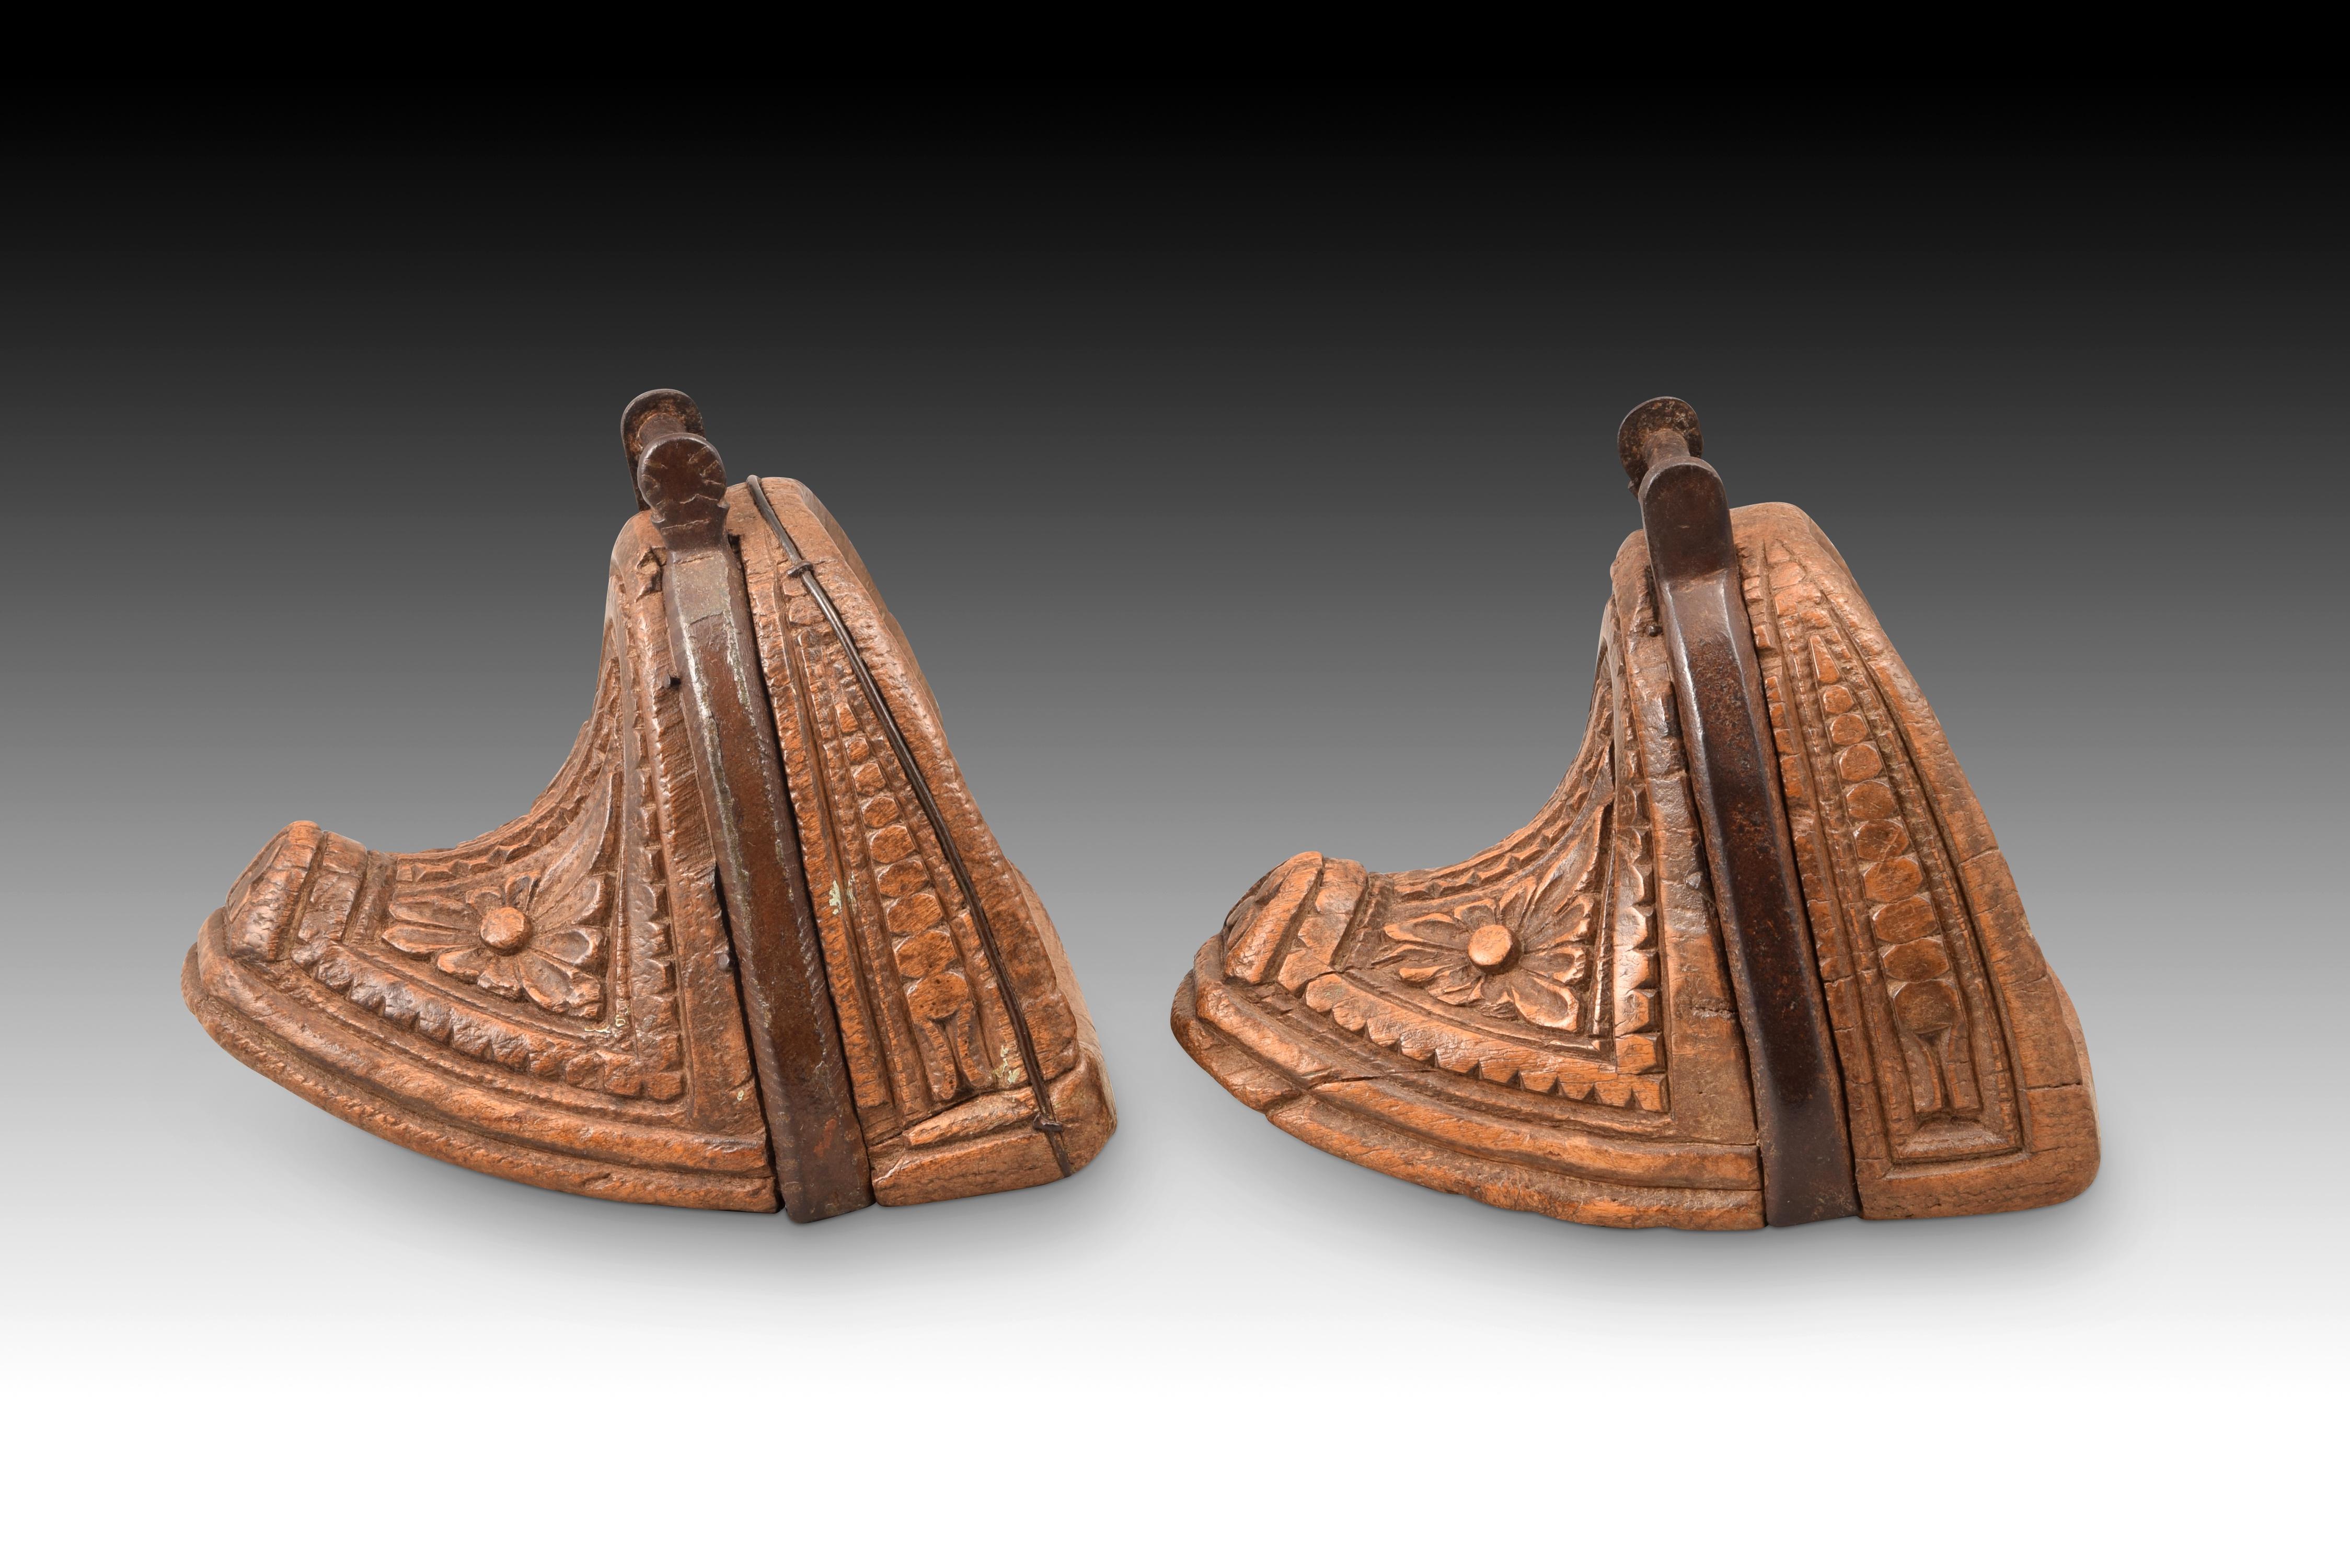 Ein Paar Steigbügel. Geschnitztes Holz, Eisen. Chile, 18. Jahrhundert. 
Paar Steigbügel, bestehend aus einem geschnitzten Holzblock, der auf der Vorderseite die Form eines Halbmondes hat und auf der Außenseite mit geometrischen und pflanzlichen